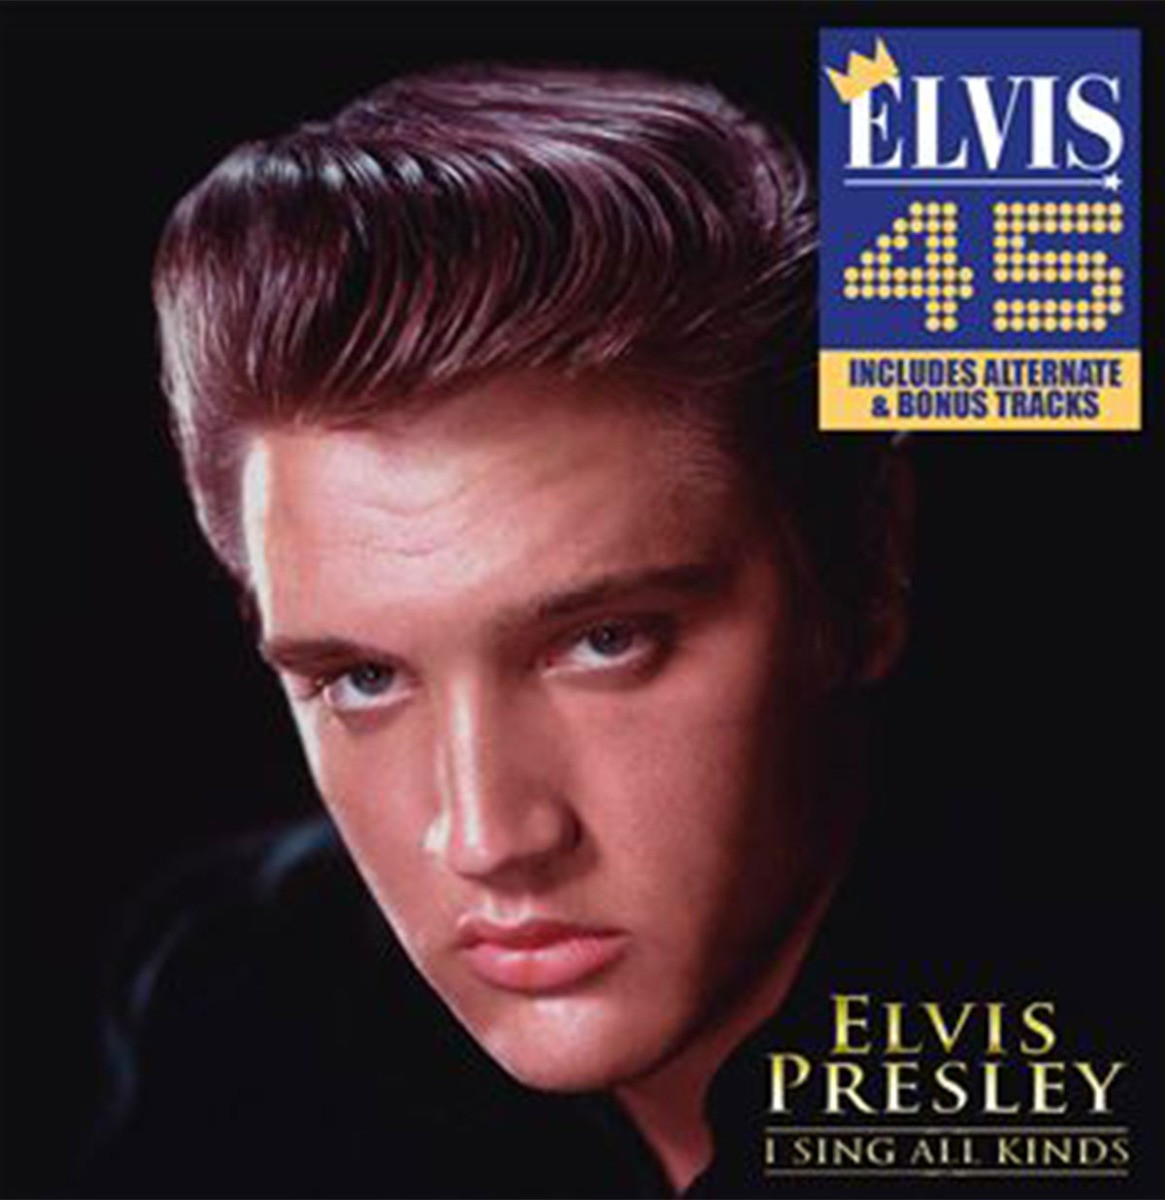 Elvis Presley - I Sing All Kinds CD